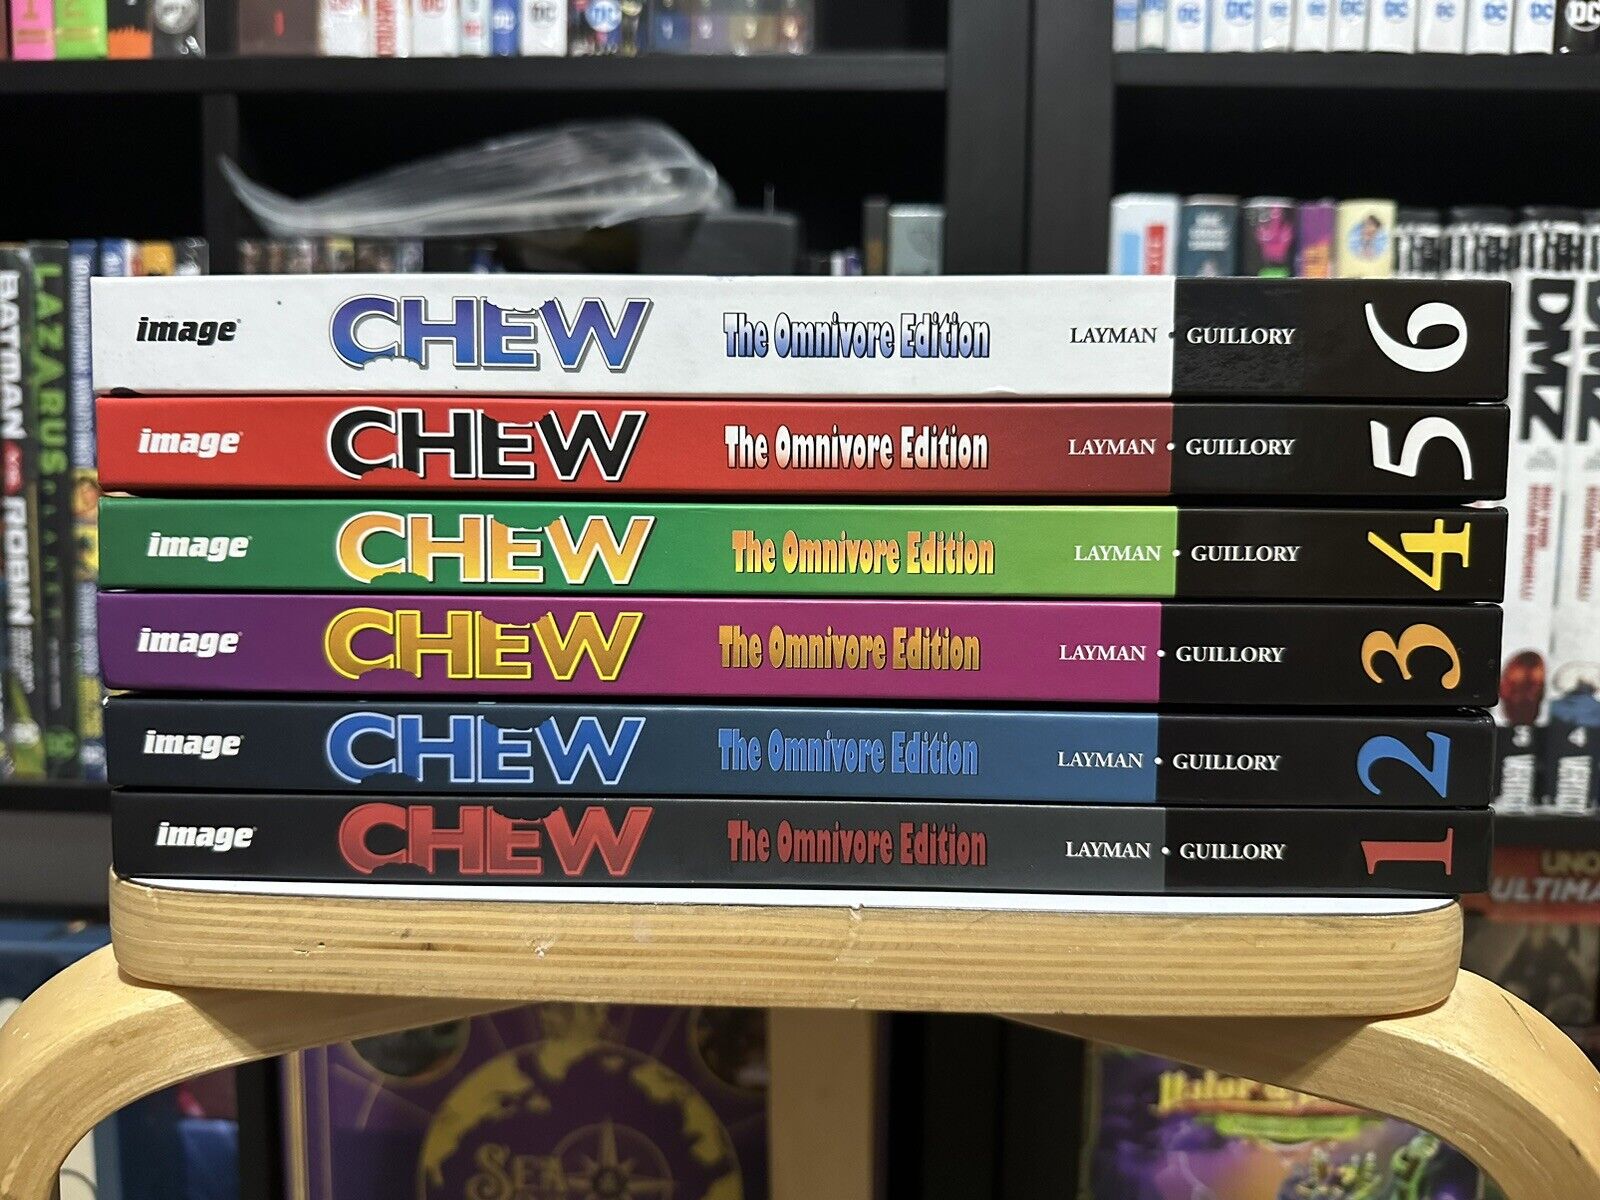 Chew - The Omnivore Edition - Vol. 1-6 - Hardcover - Complete